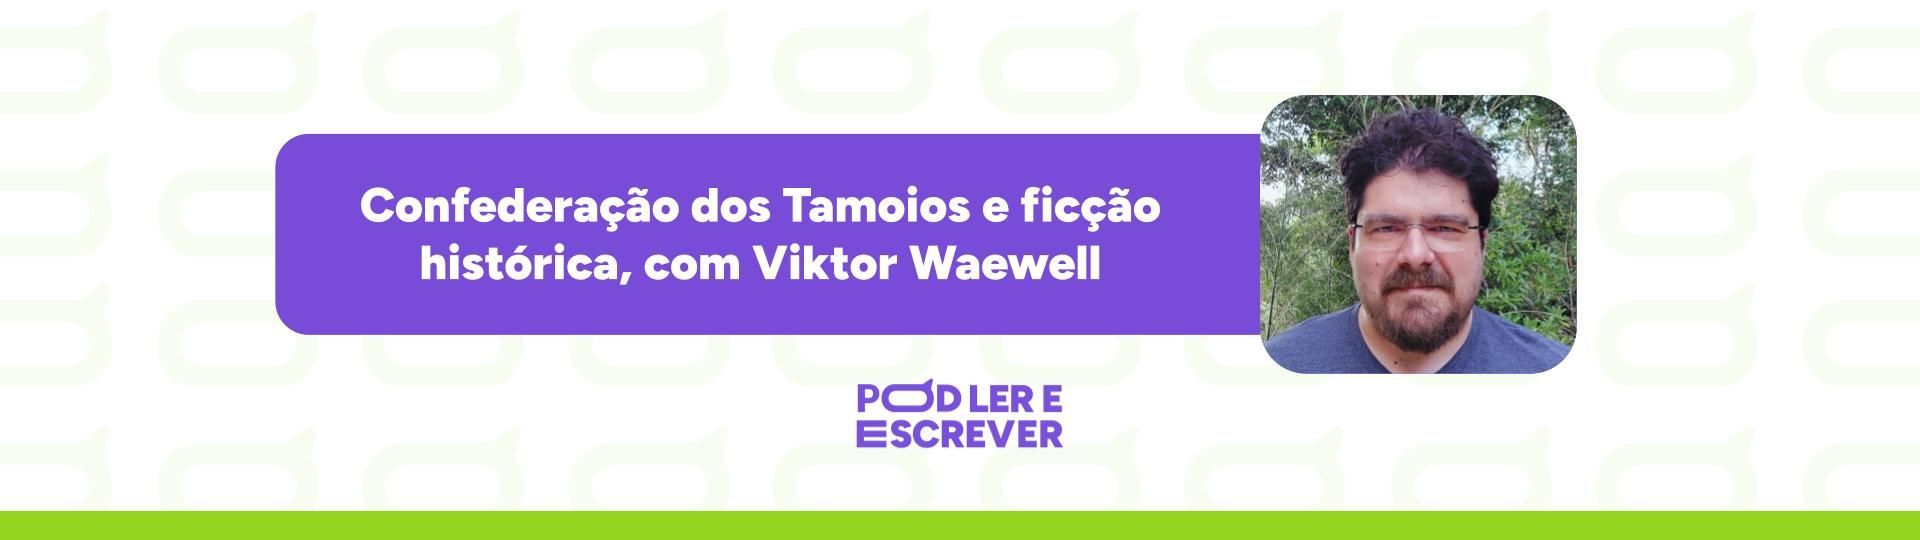 confederacao-dos-tamoios-e-ficcao-historica-com-viktor-waewell